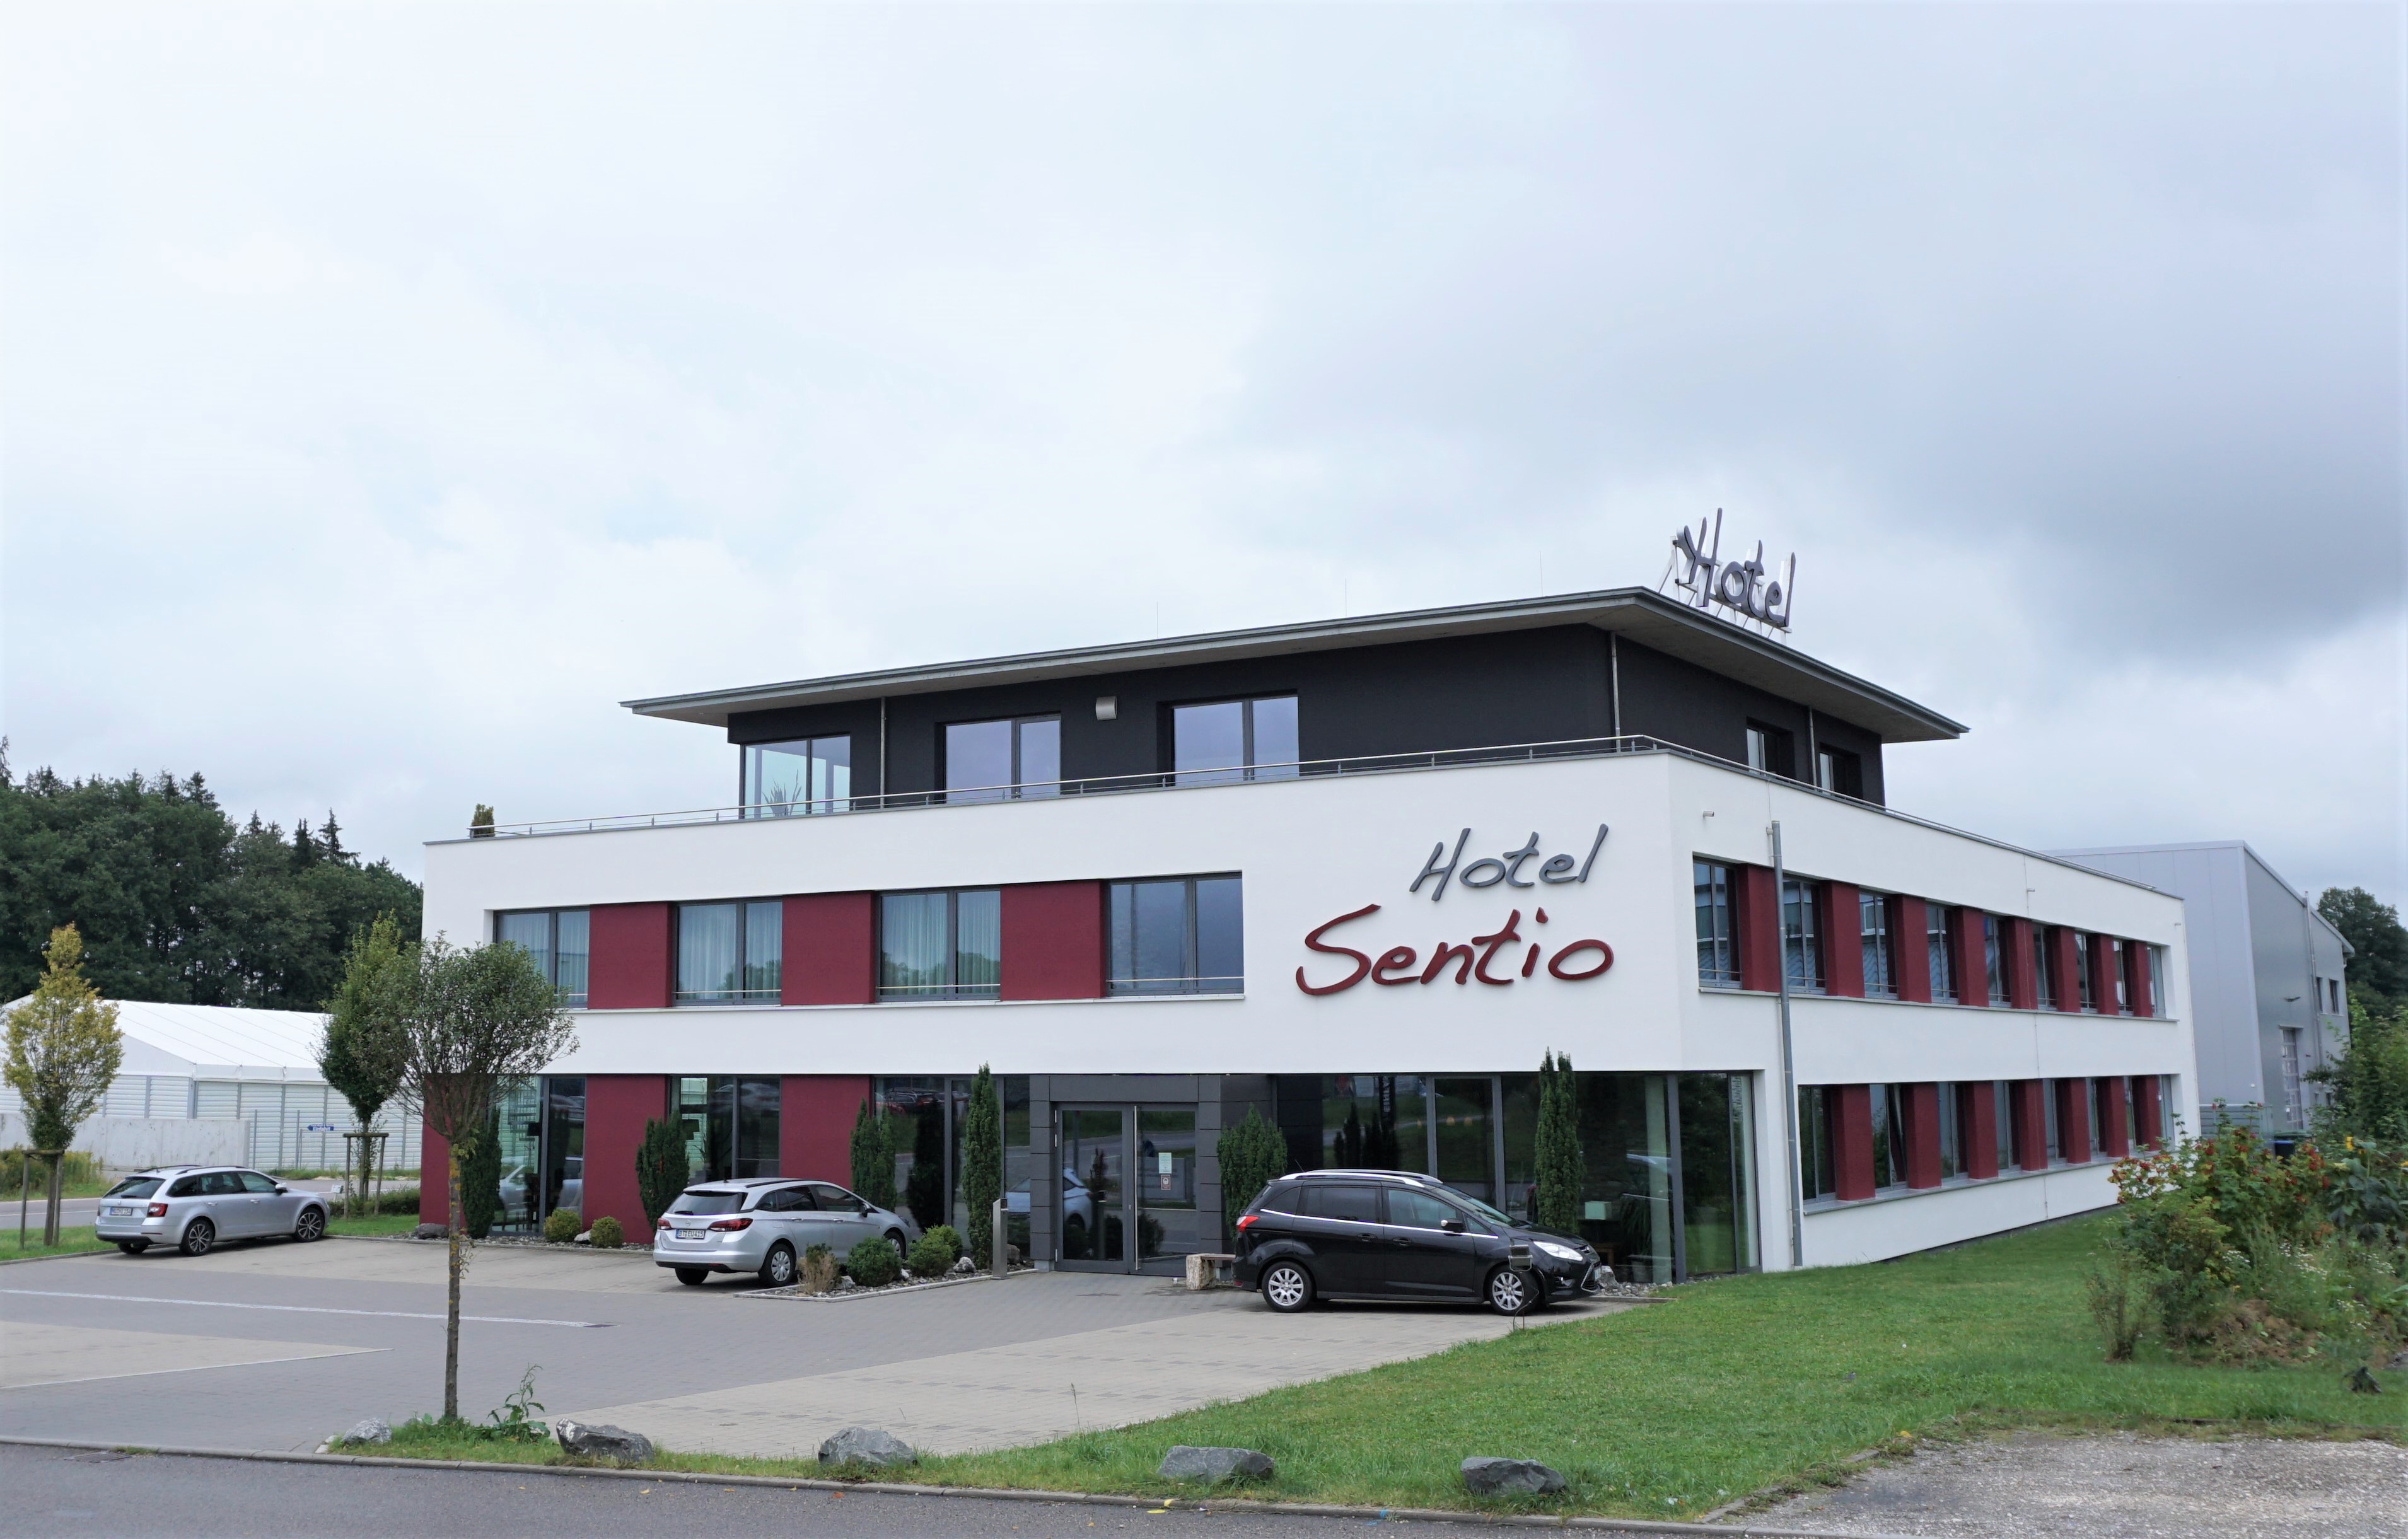 Hotel Sentio, Vöhringen.
